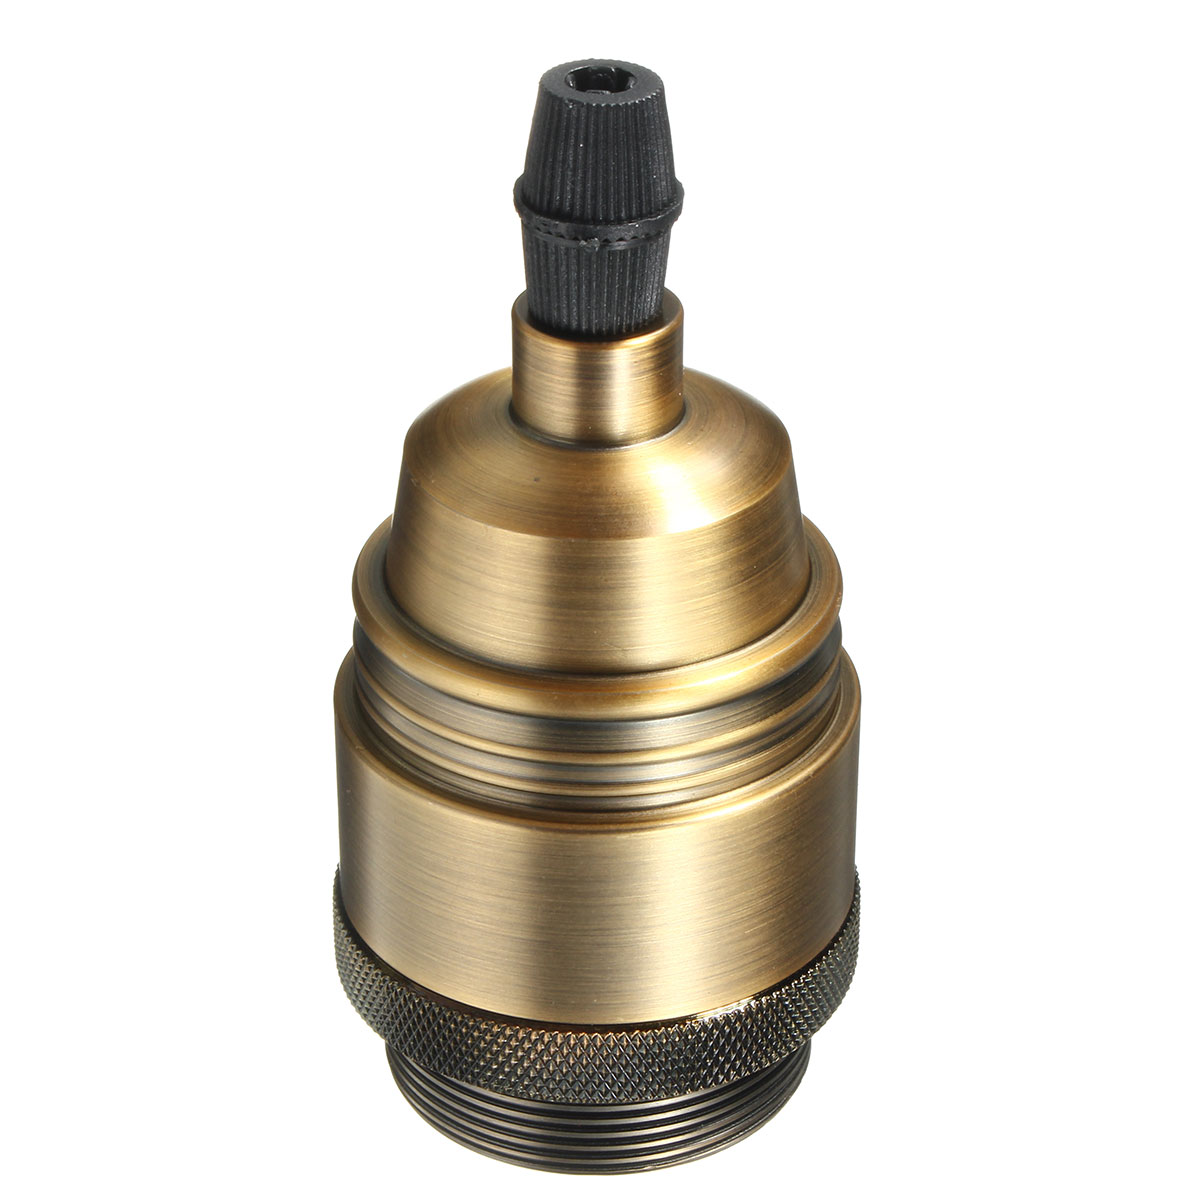 E27-Edison-Bulb-Adapter-Light-Socket-Lampholder-for-DIY-Handmade-Lamp-Pendant-AC110-250V-1431524-6